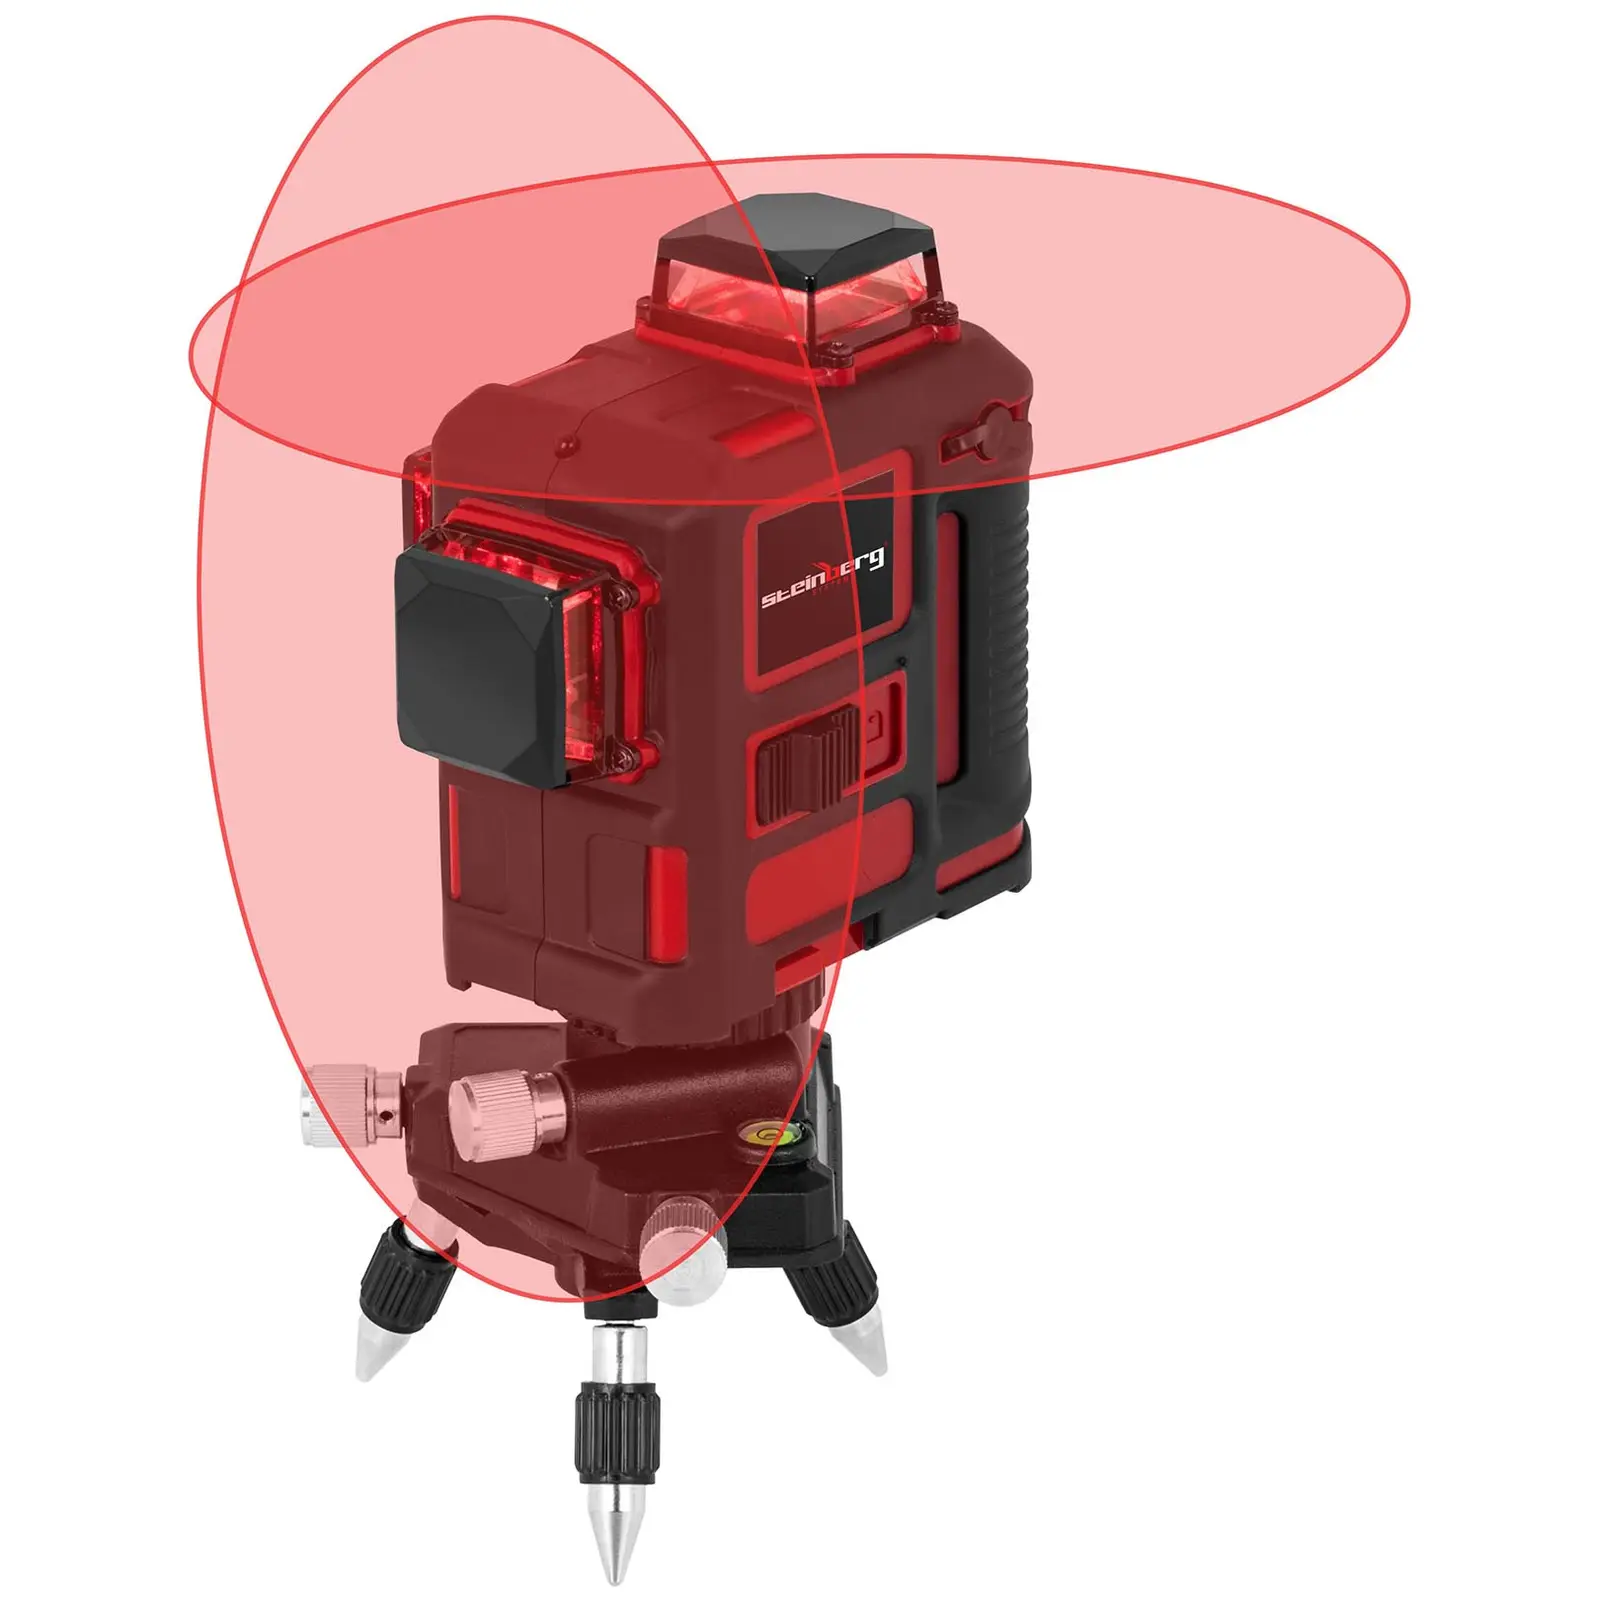 Tracciatore laser rotante con treppiede e valigetta per il trasporto - 25 m